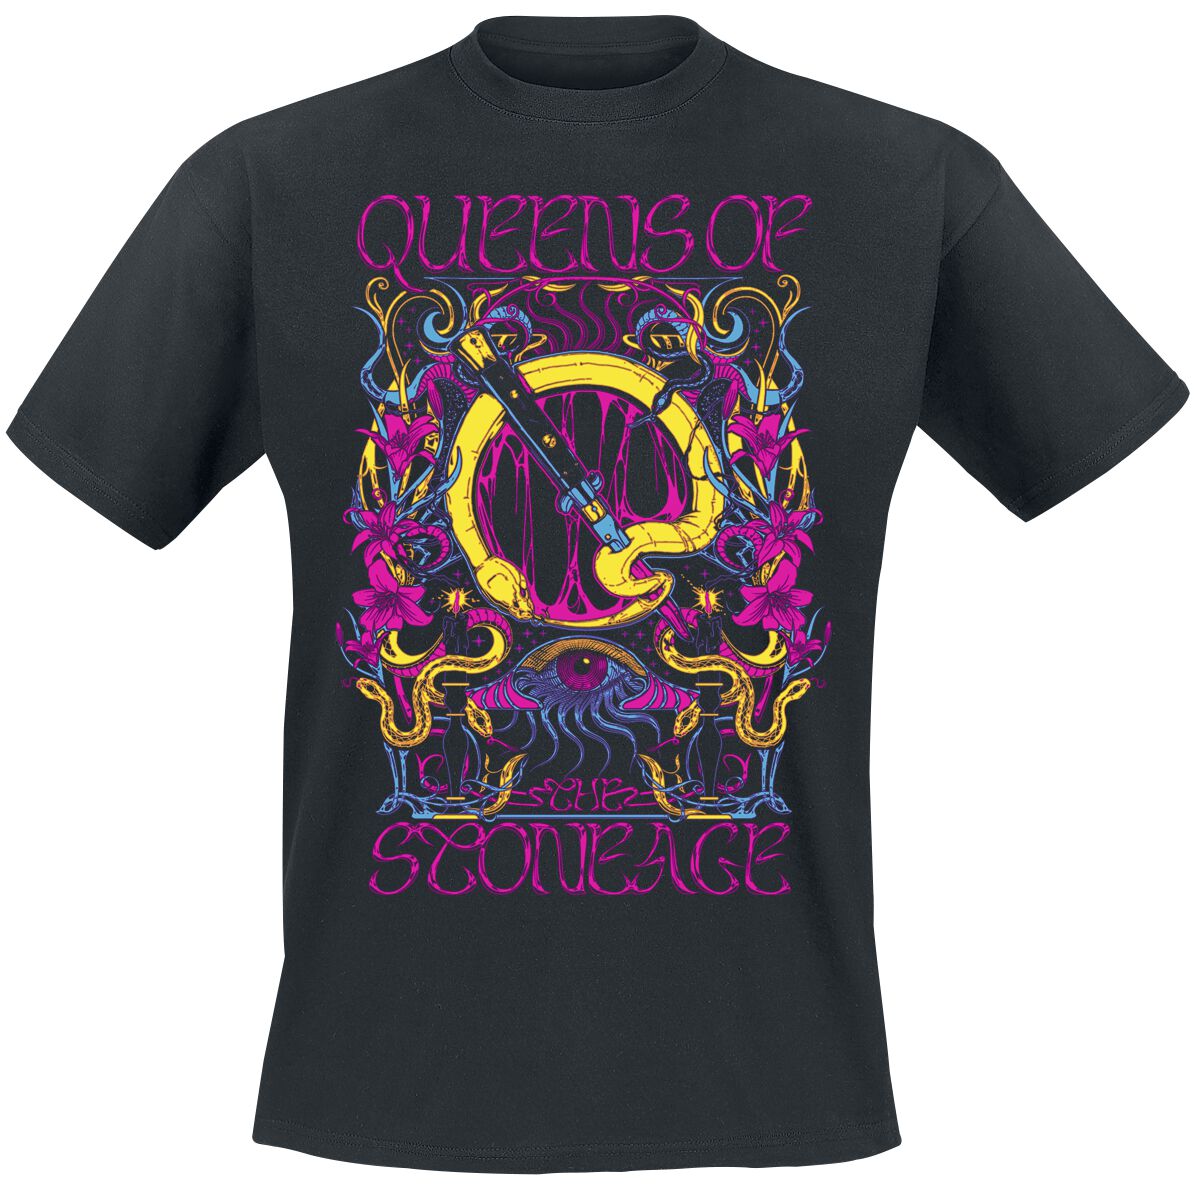 Queens Of The Stone Age T-Shirt - In Times New Roman - Neon Sacrilege - S bis 3XL - für Männer - Größe M - schwarz  - Lizenziertes Merchandise!